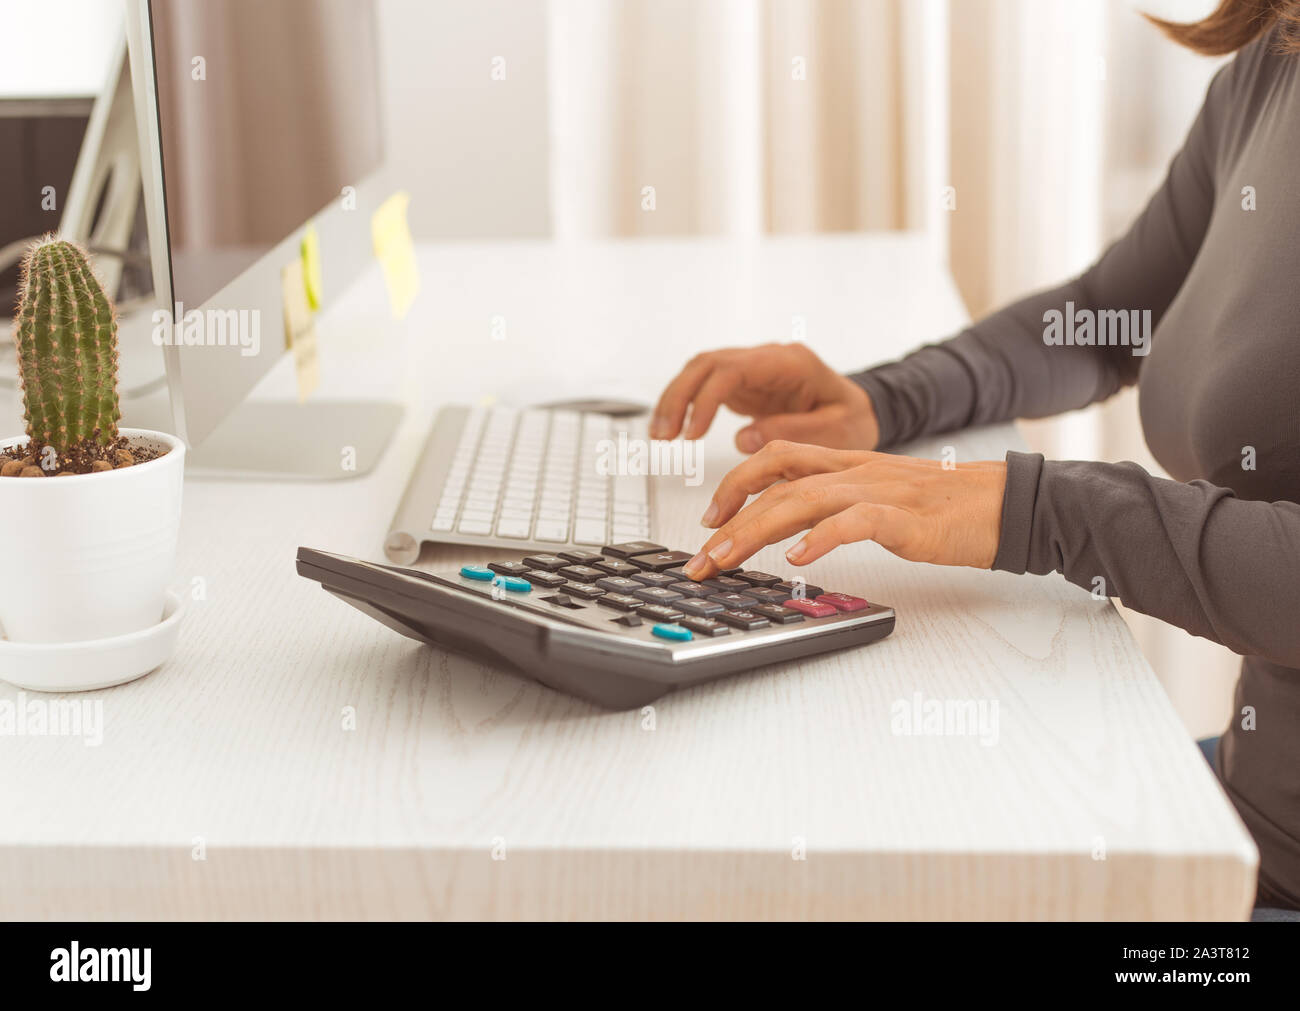 Il commercialista lavora su una calcolatrice. Il finanziere scrive una dichiarazione dei redditi. Uomo d'affari sul posto di lavoro. Foto Stock